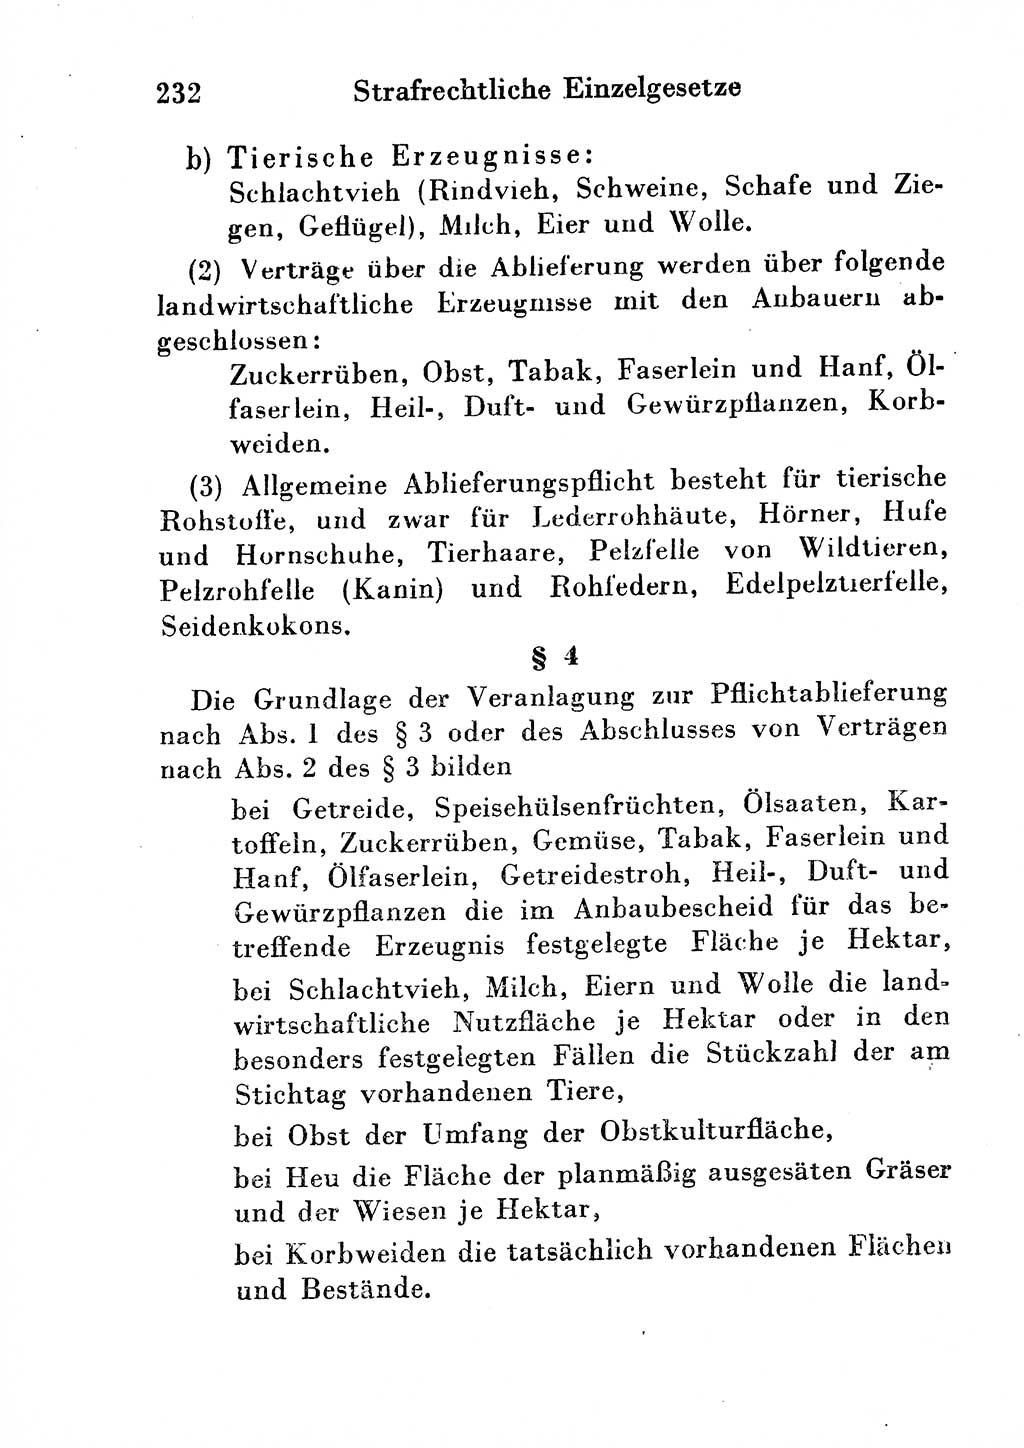 Strafgesetzbuch (StGB) und andere Strafgesetze [Deutsche Demokratische Republik (DDR)] 1954, Seite 232 (StGB Strafges. DDR 1954, S. 232)